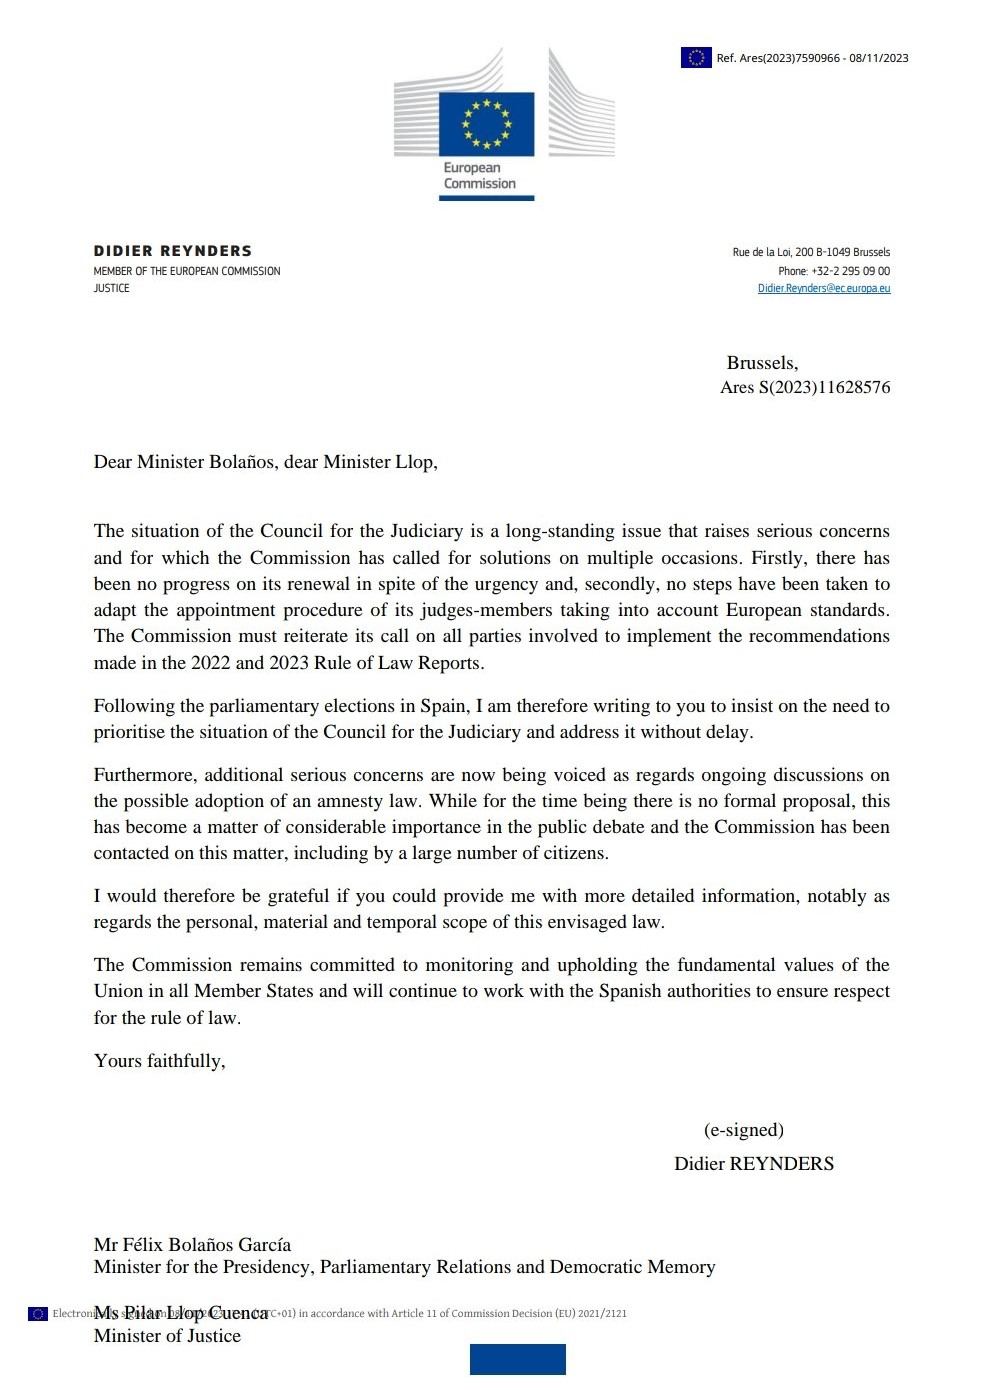 Carta Comissio Europea, Didier Reynders, govern espanyol amnistia